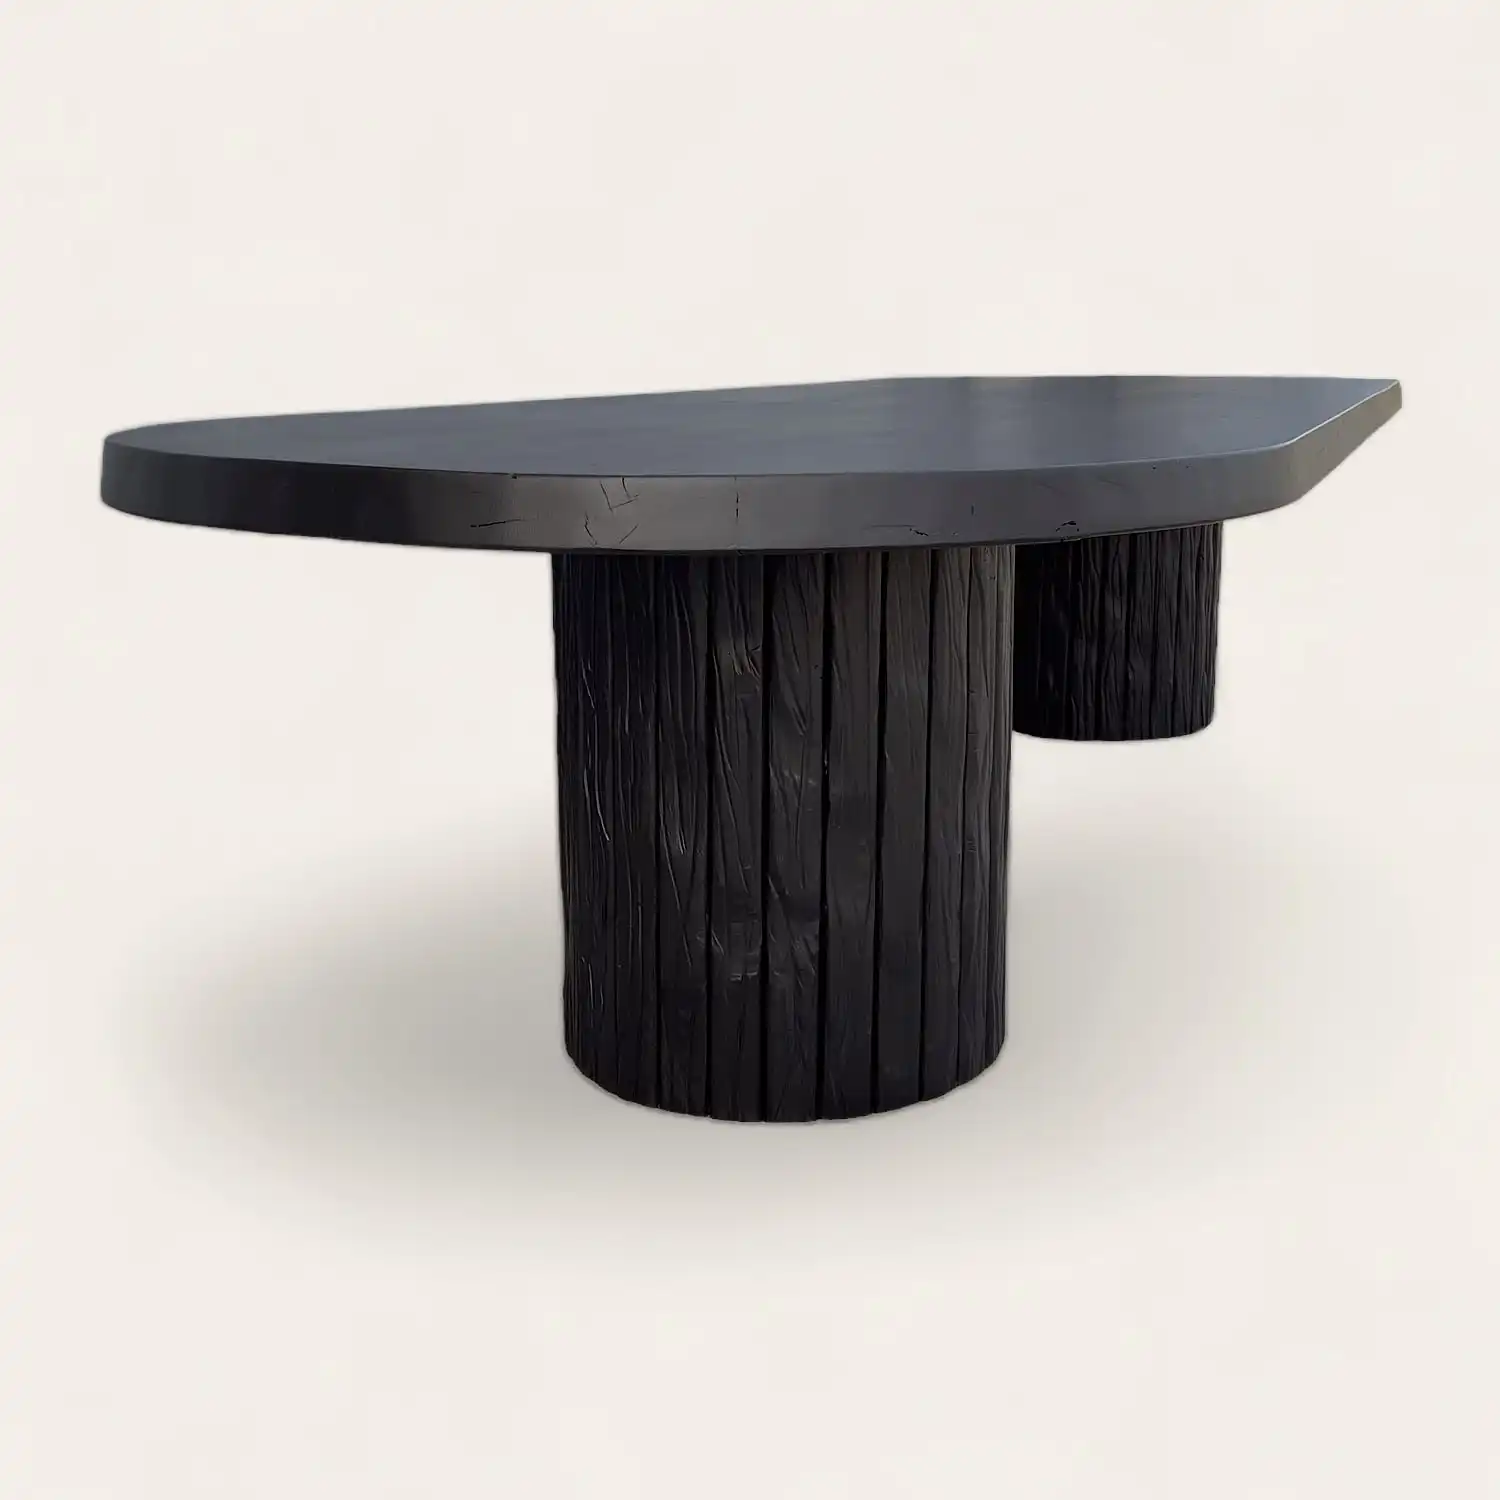 Une table à manger noire avec deux pieds en bois.